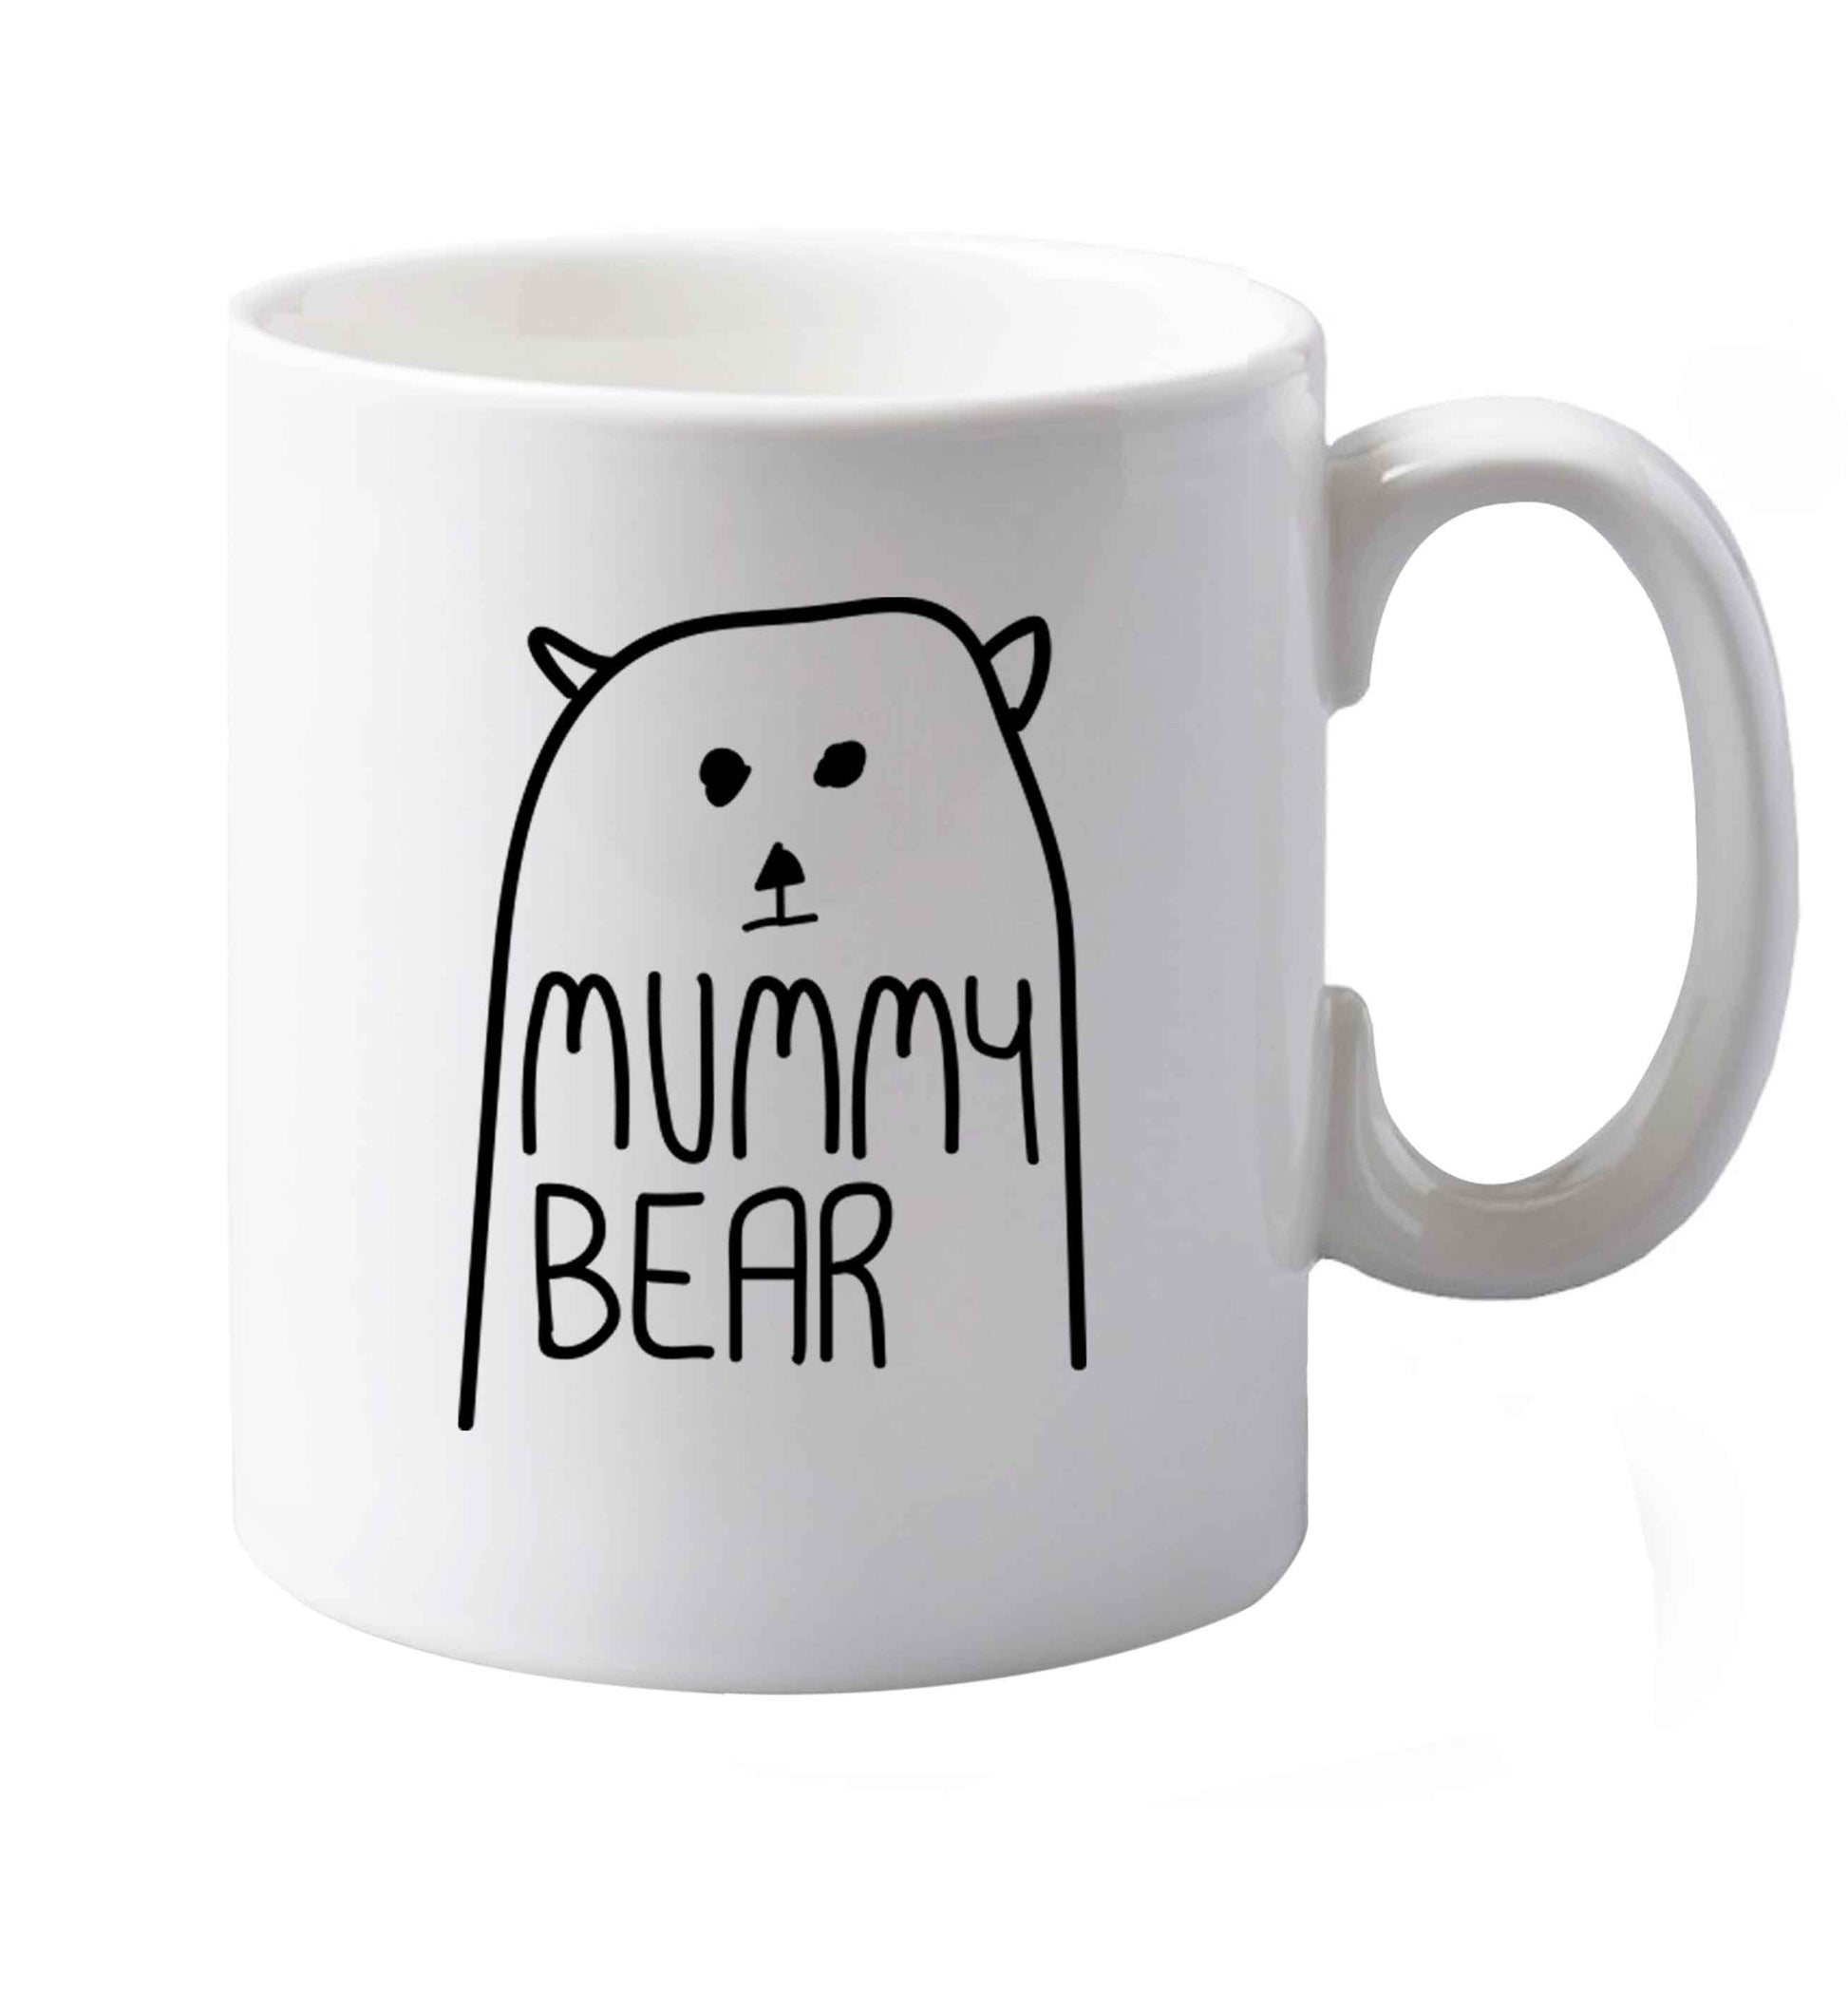 10 oz Mummy bear ceramic mug both sides